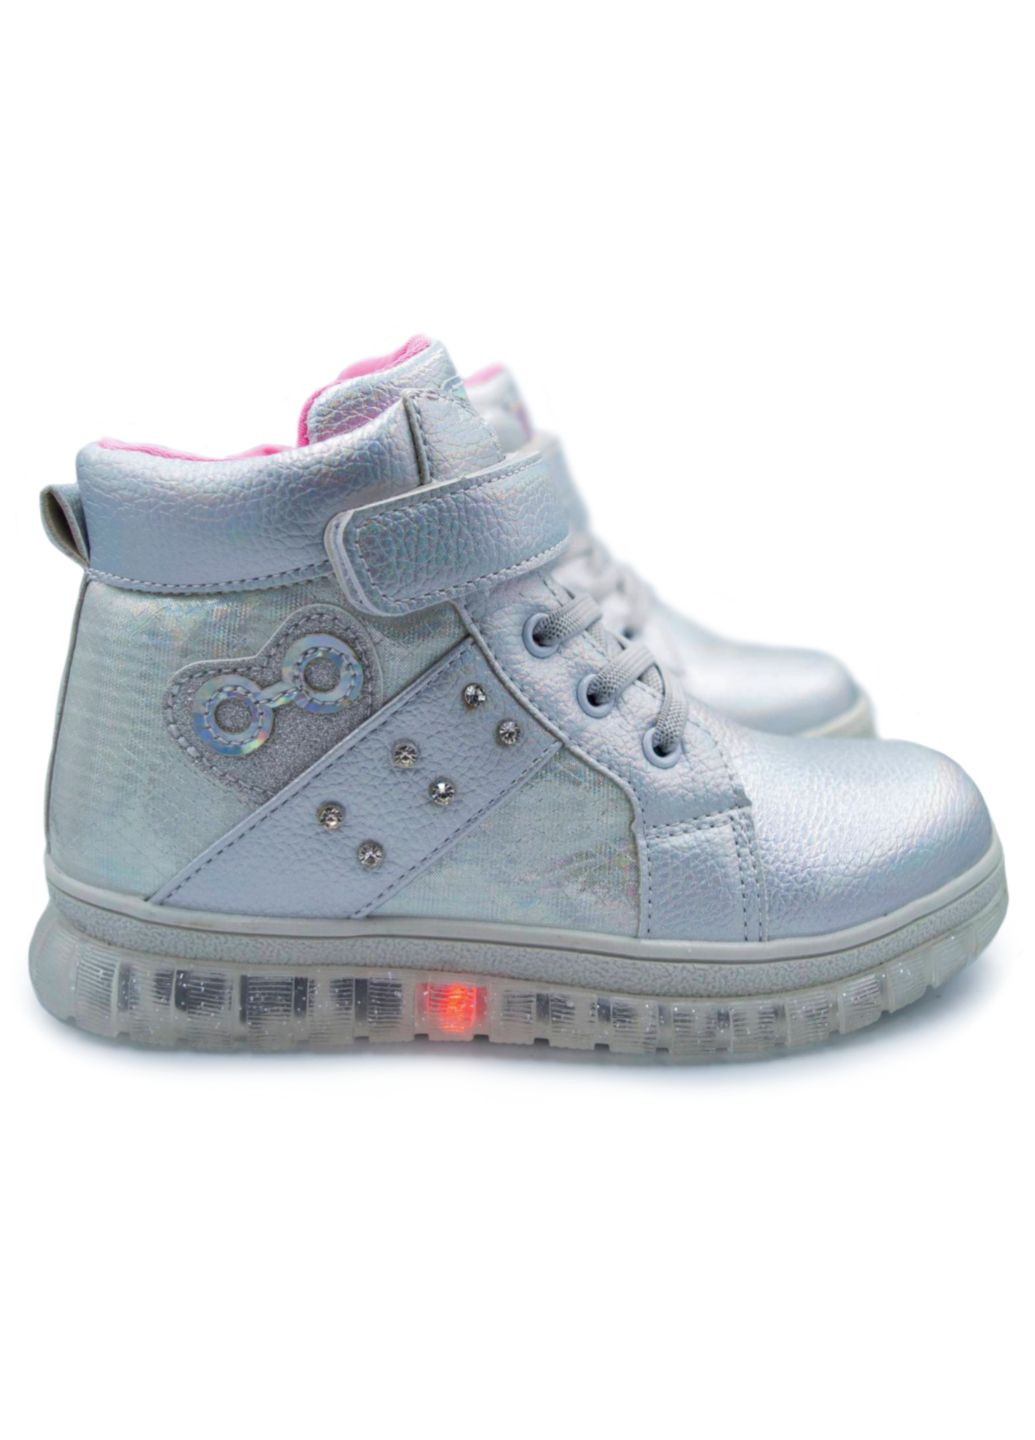 Серебряные осенние демисезонная обувь для девочки, ботинки, сапожки, р.28-33 Clibee